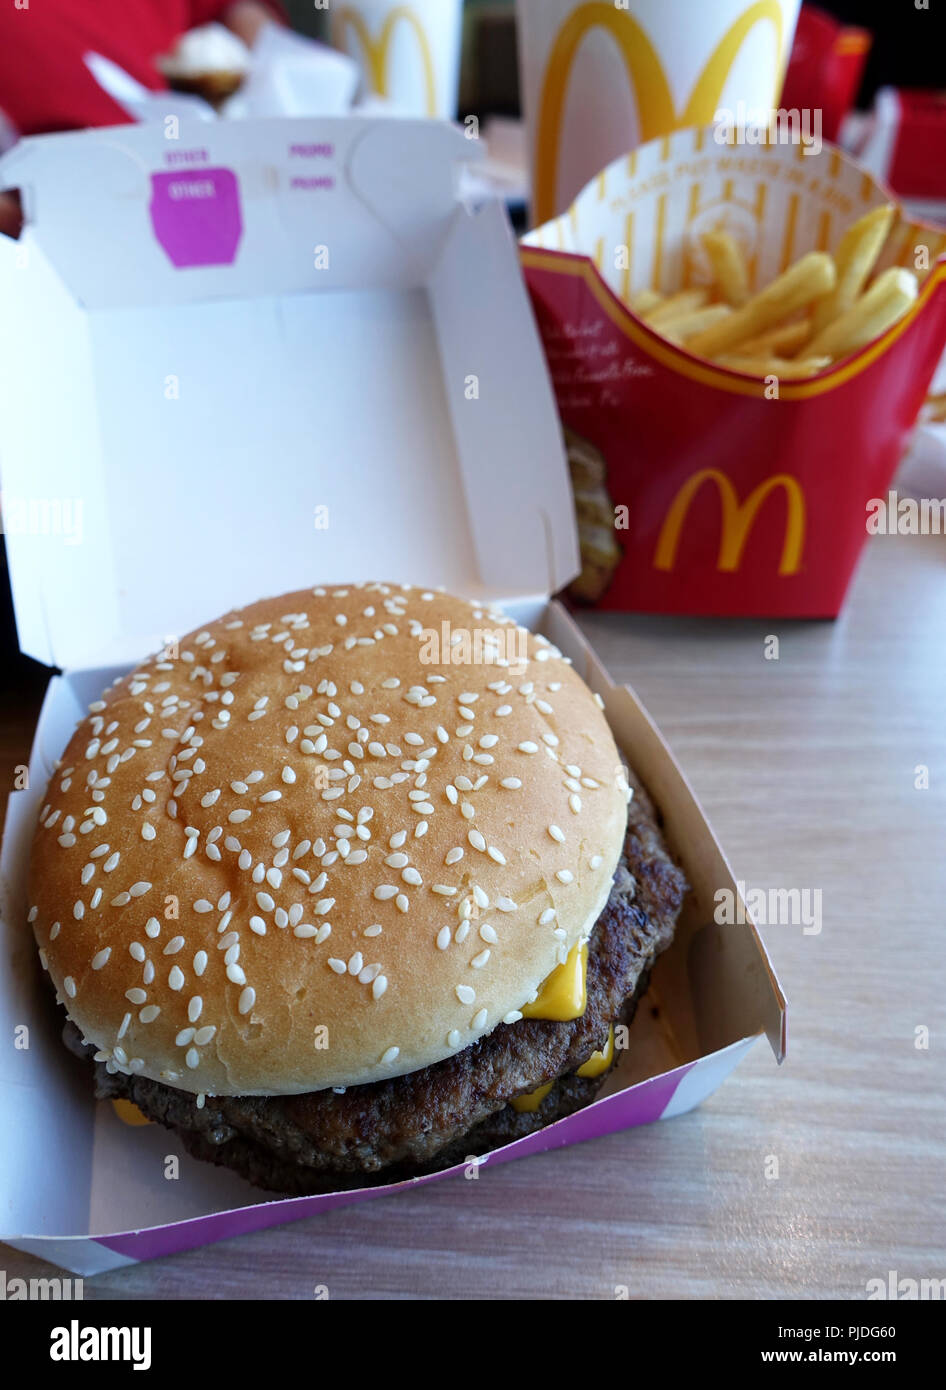 McDonald's Big Mac burger and Fries Stock Photo